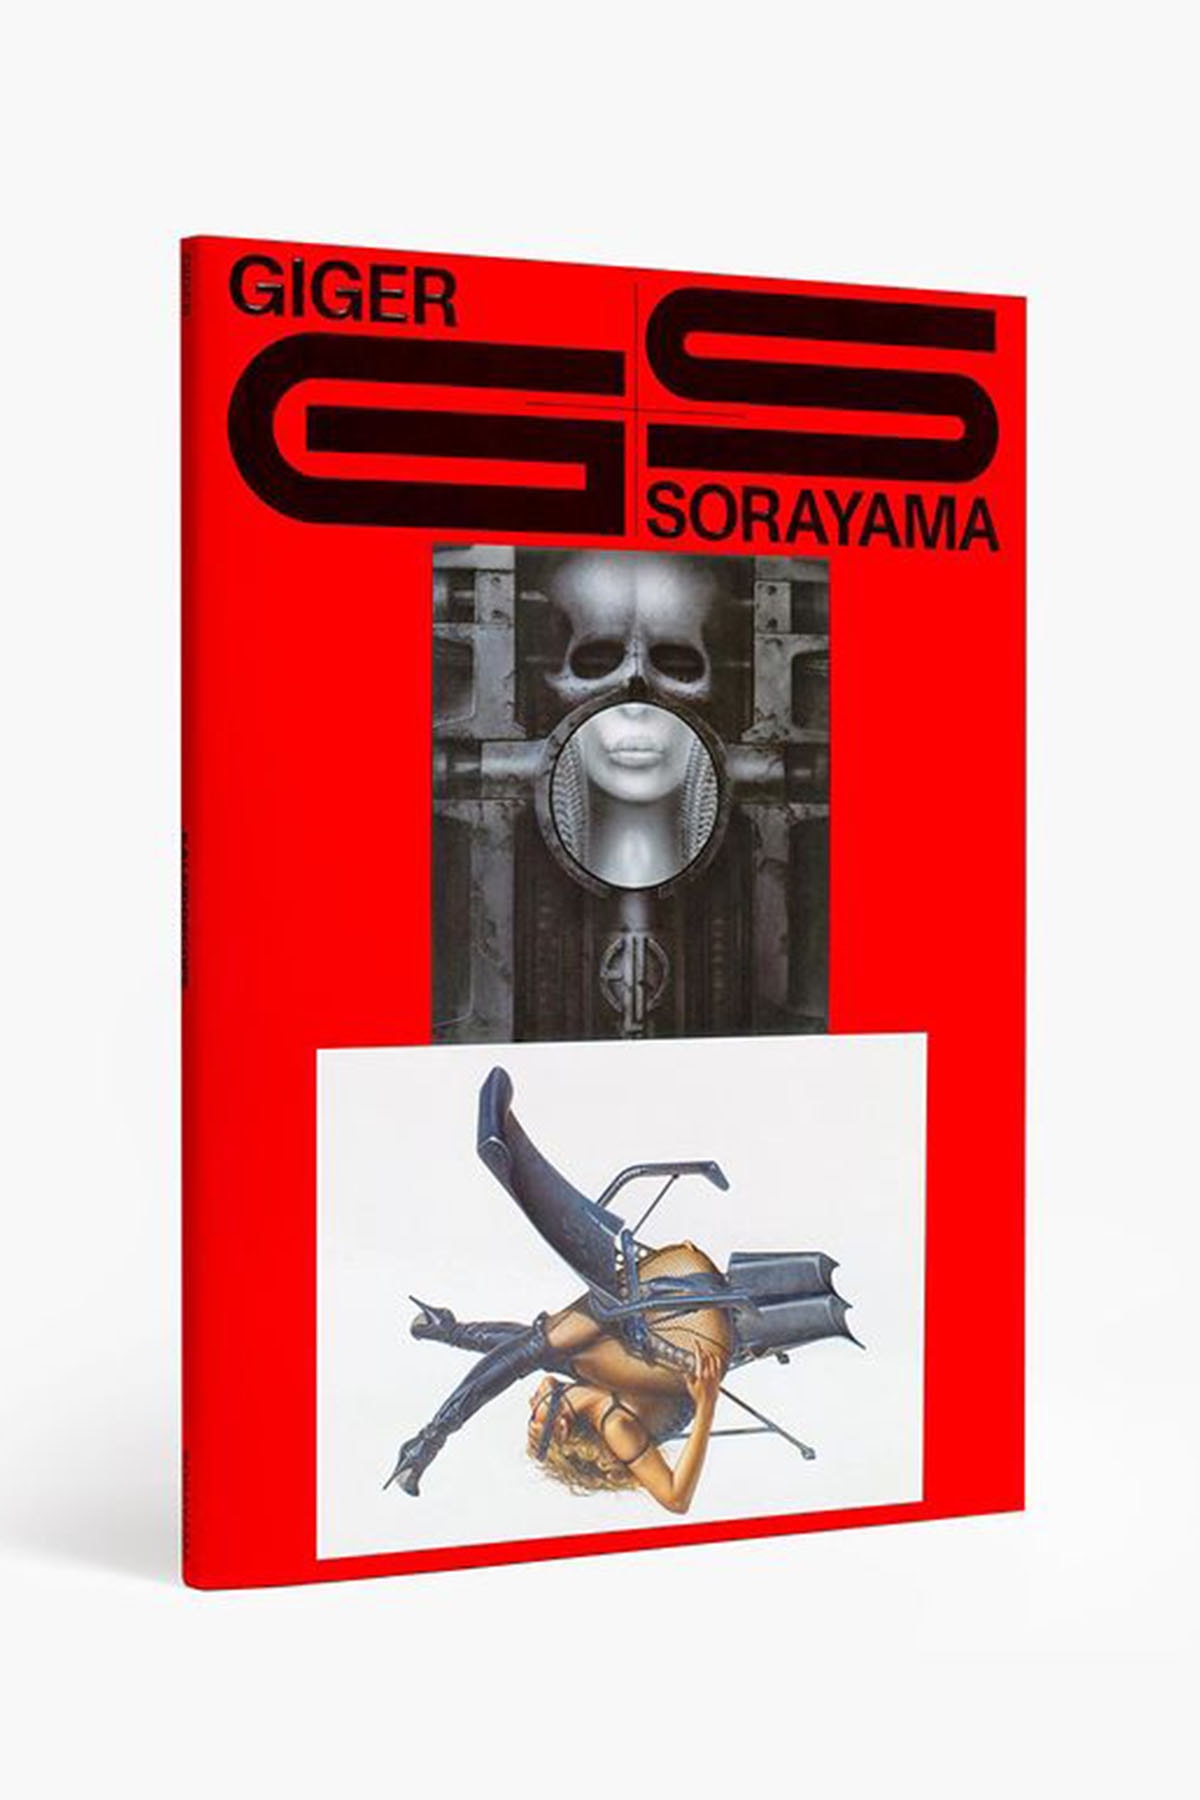 空山基 x H.R. Giger 再版藝術書冊《Giger Sorayama》推出全新紅色版本